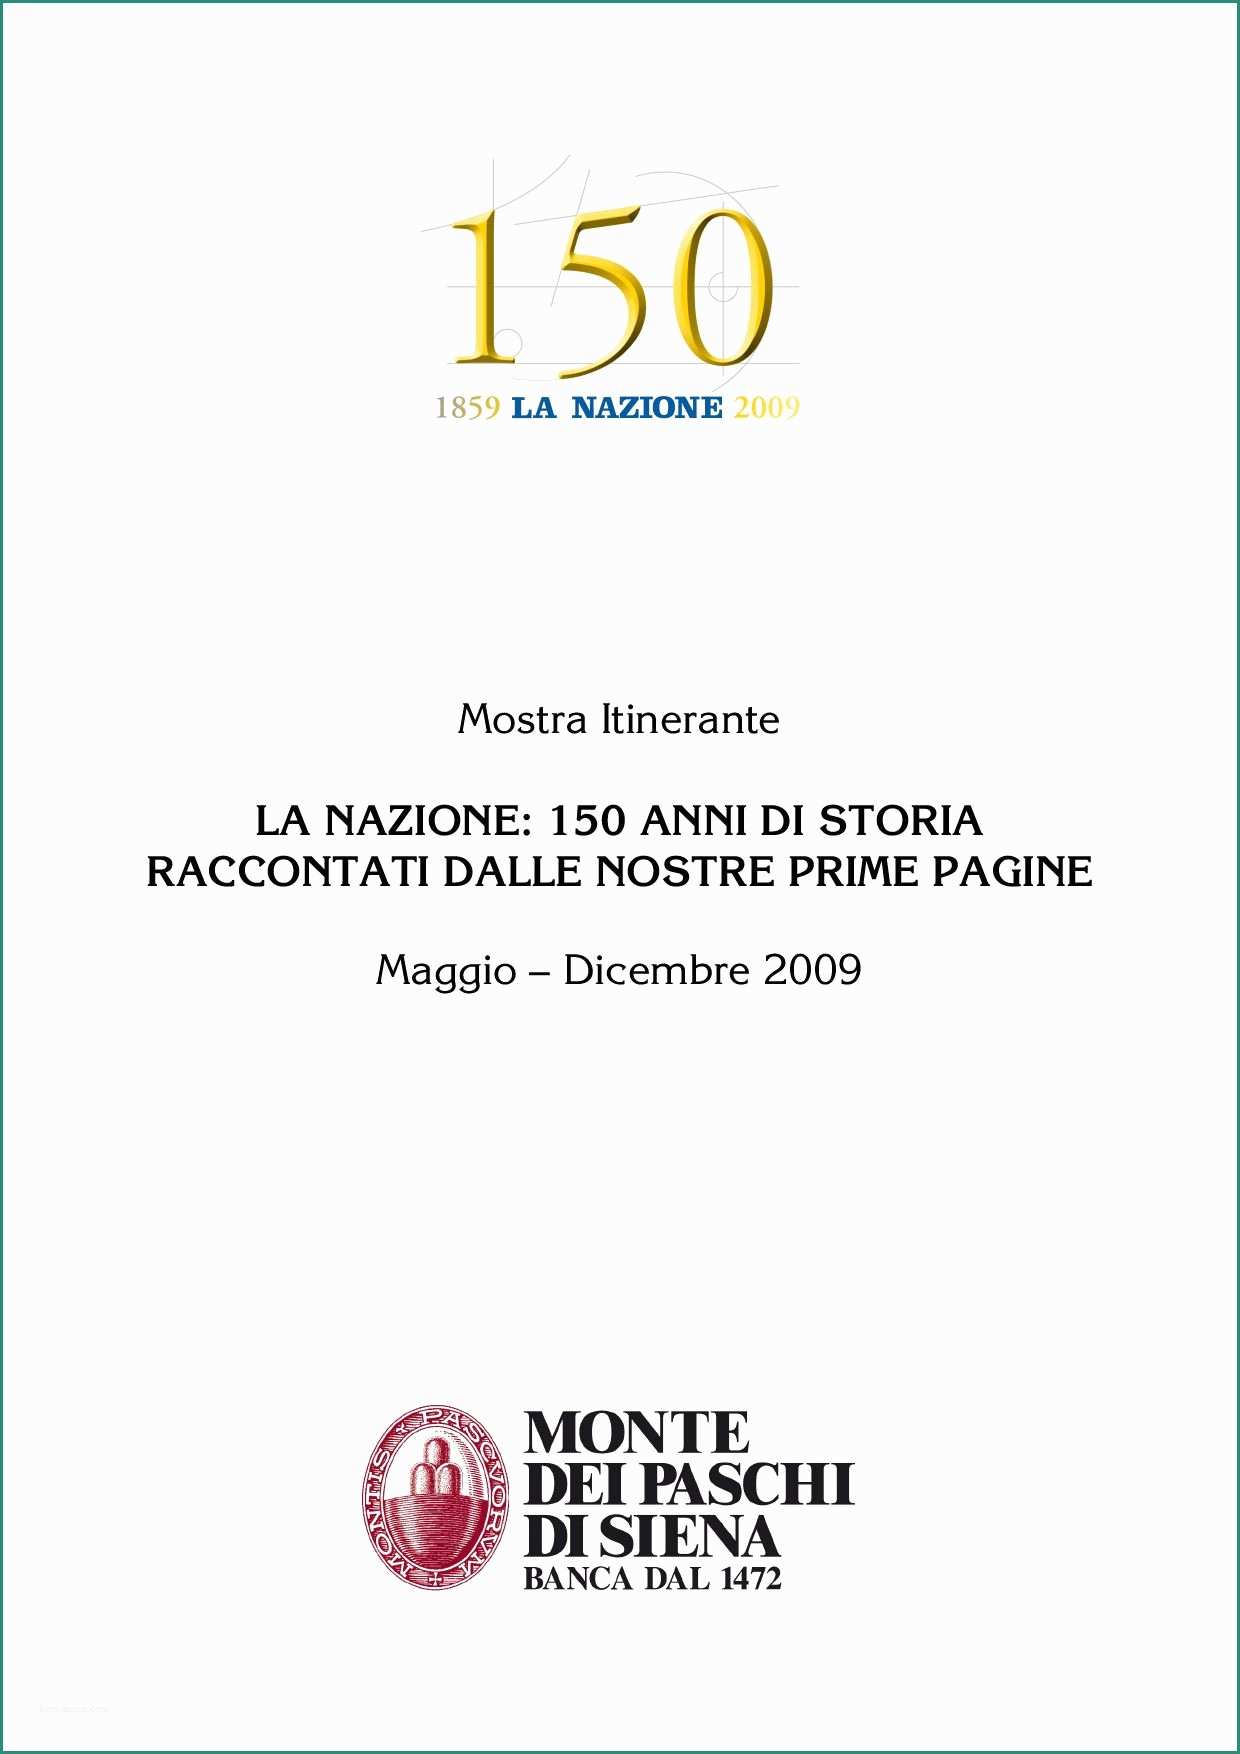 Divano Letto Posti E 150 Anni De La Nazione by Michele Accursi issuu